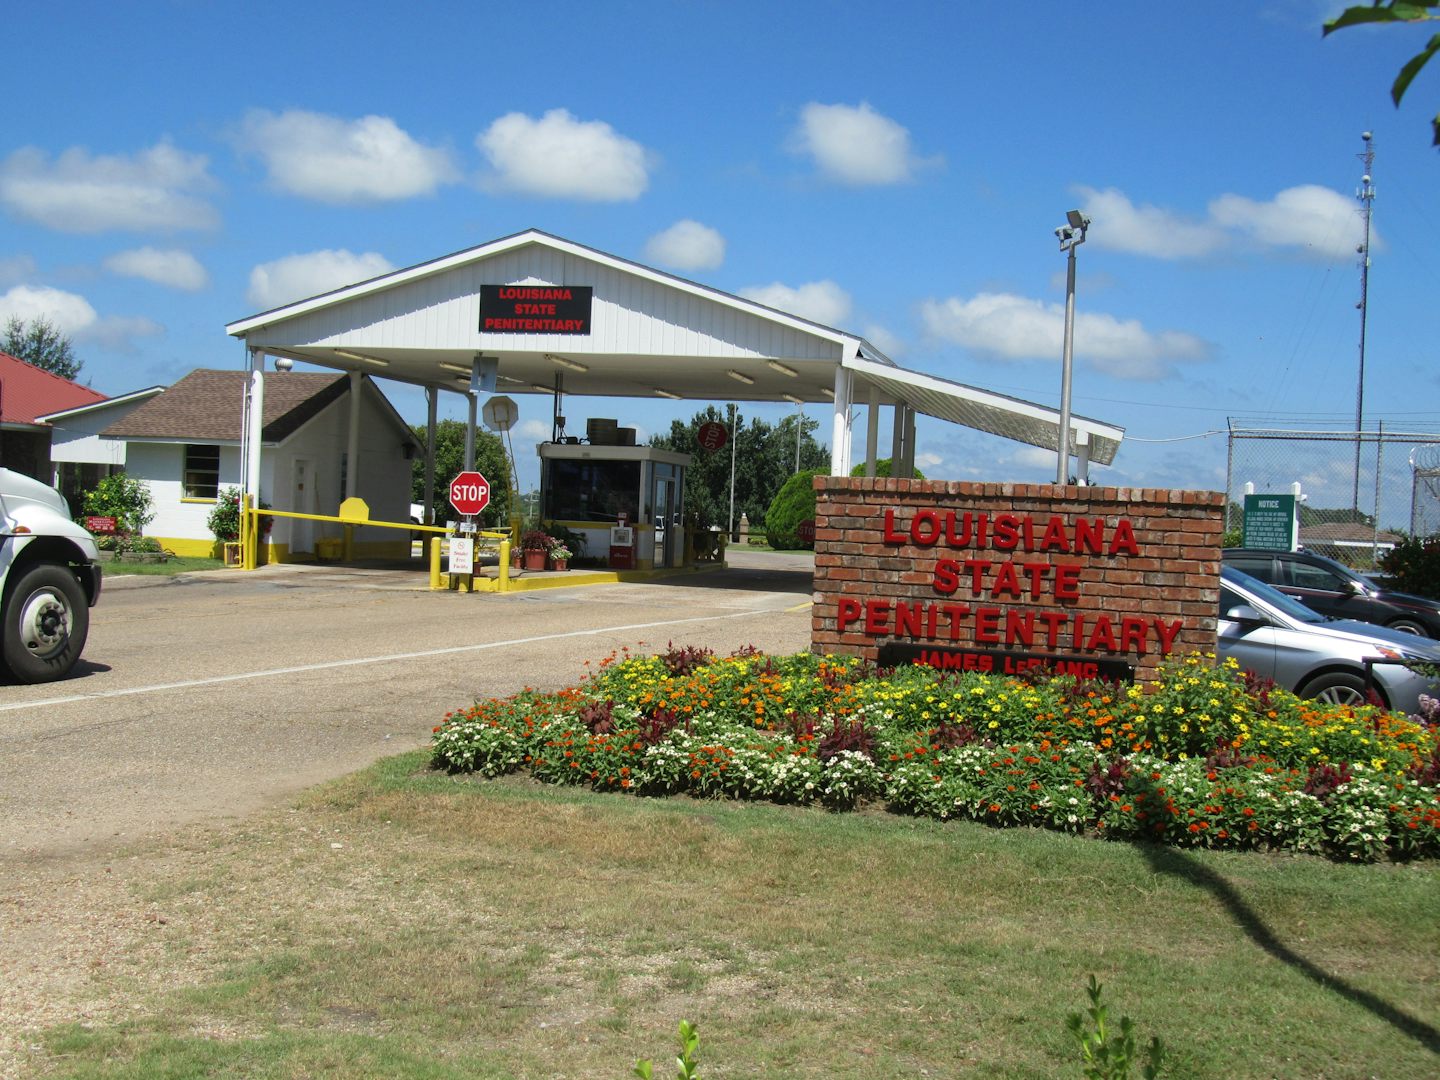 Angola Prison entrance.